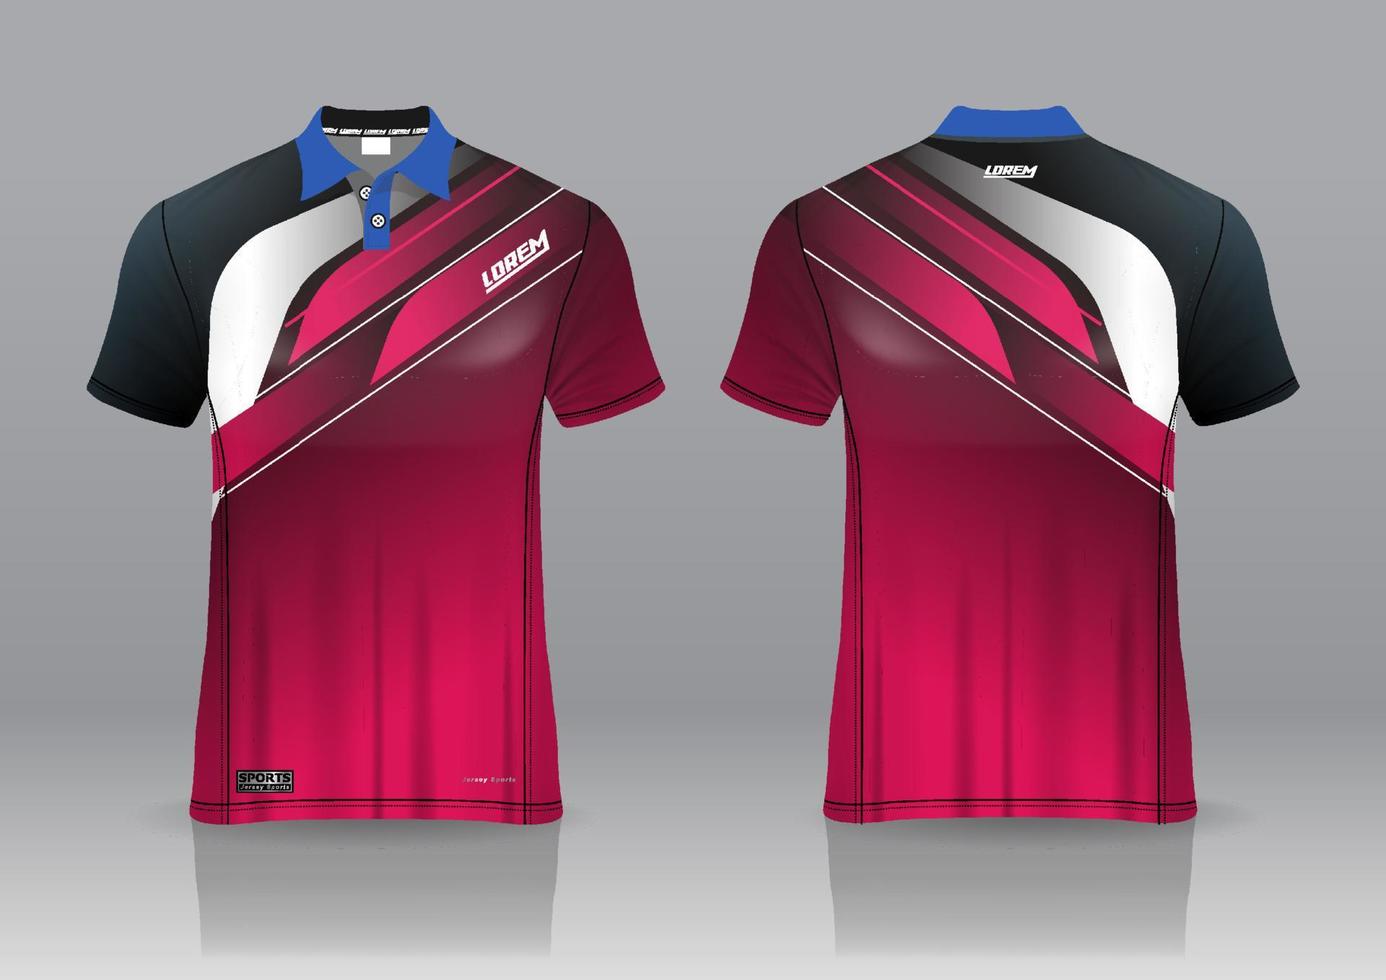 Poloshirt einheitliches Design, kann für Badminton, Golf in Vorderansicht, Rückansicht verwendet werden. Trikot-Mockup-Vektor, Design-Premium sehr einfach und leicht anzupassen vektor